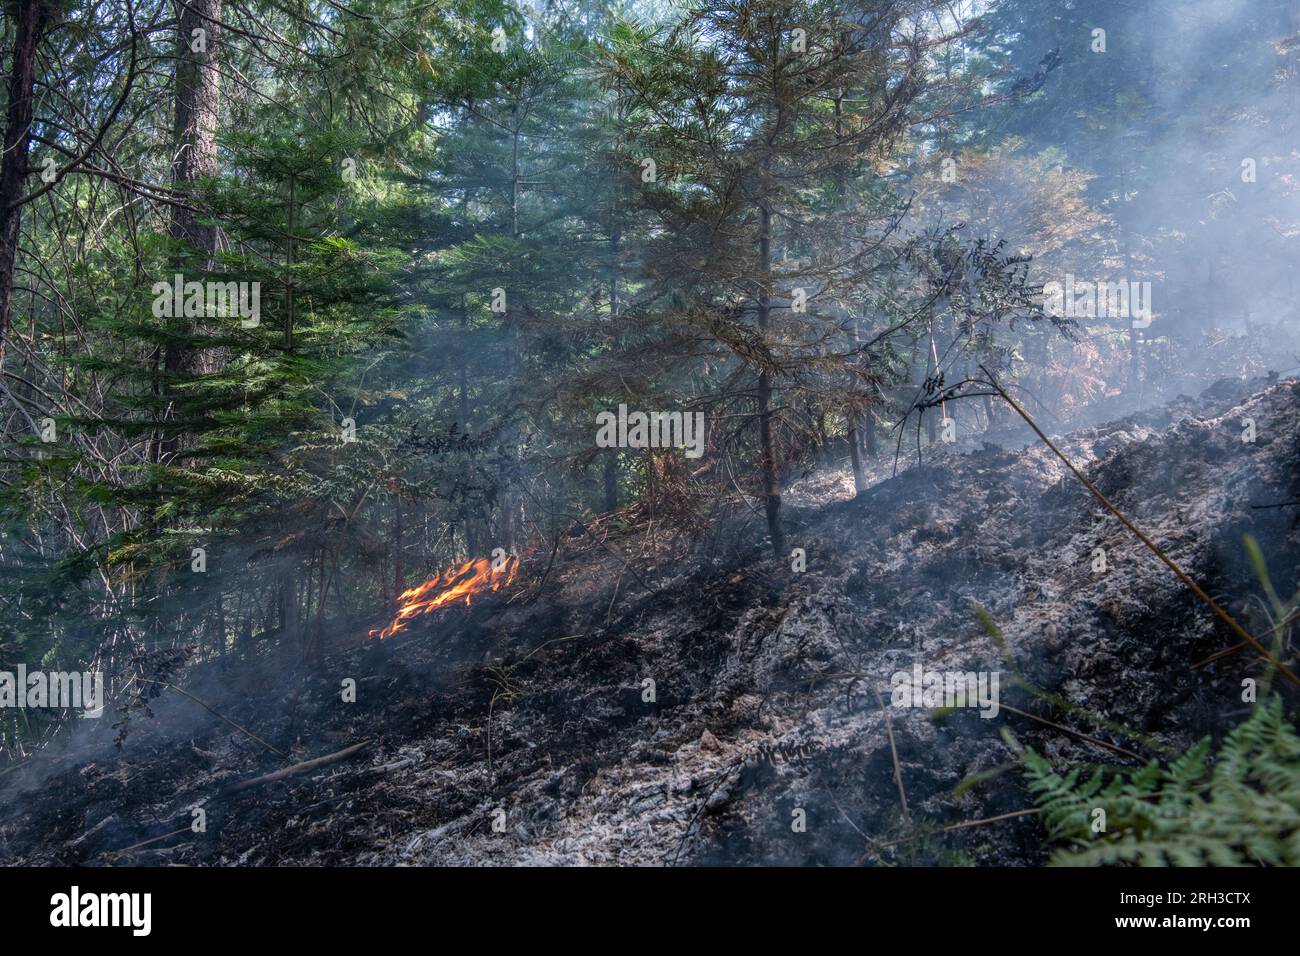 Forêt nationale Stanislaus dans la Sierra Nevada en Californie, un feu de forêt brûlant à travers le sol de la forêt. La brûlure laisse derrière elle des cendres carbonisées. Banque D'Images